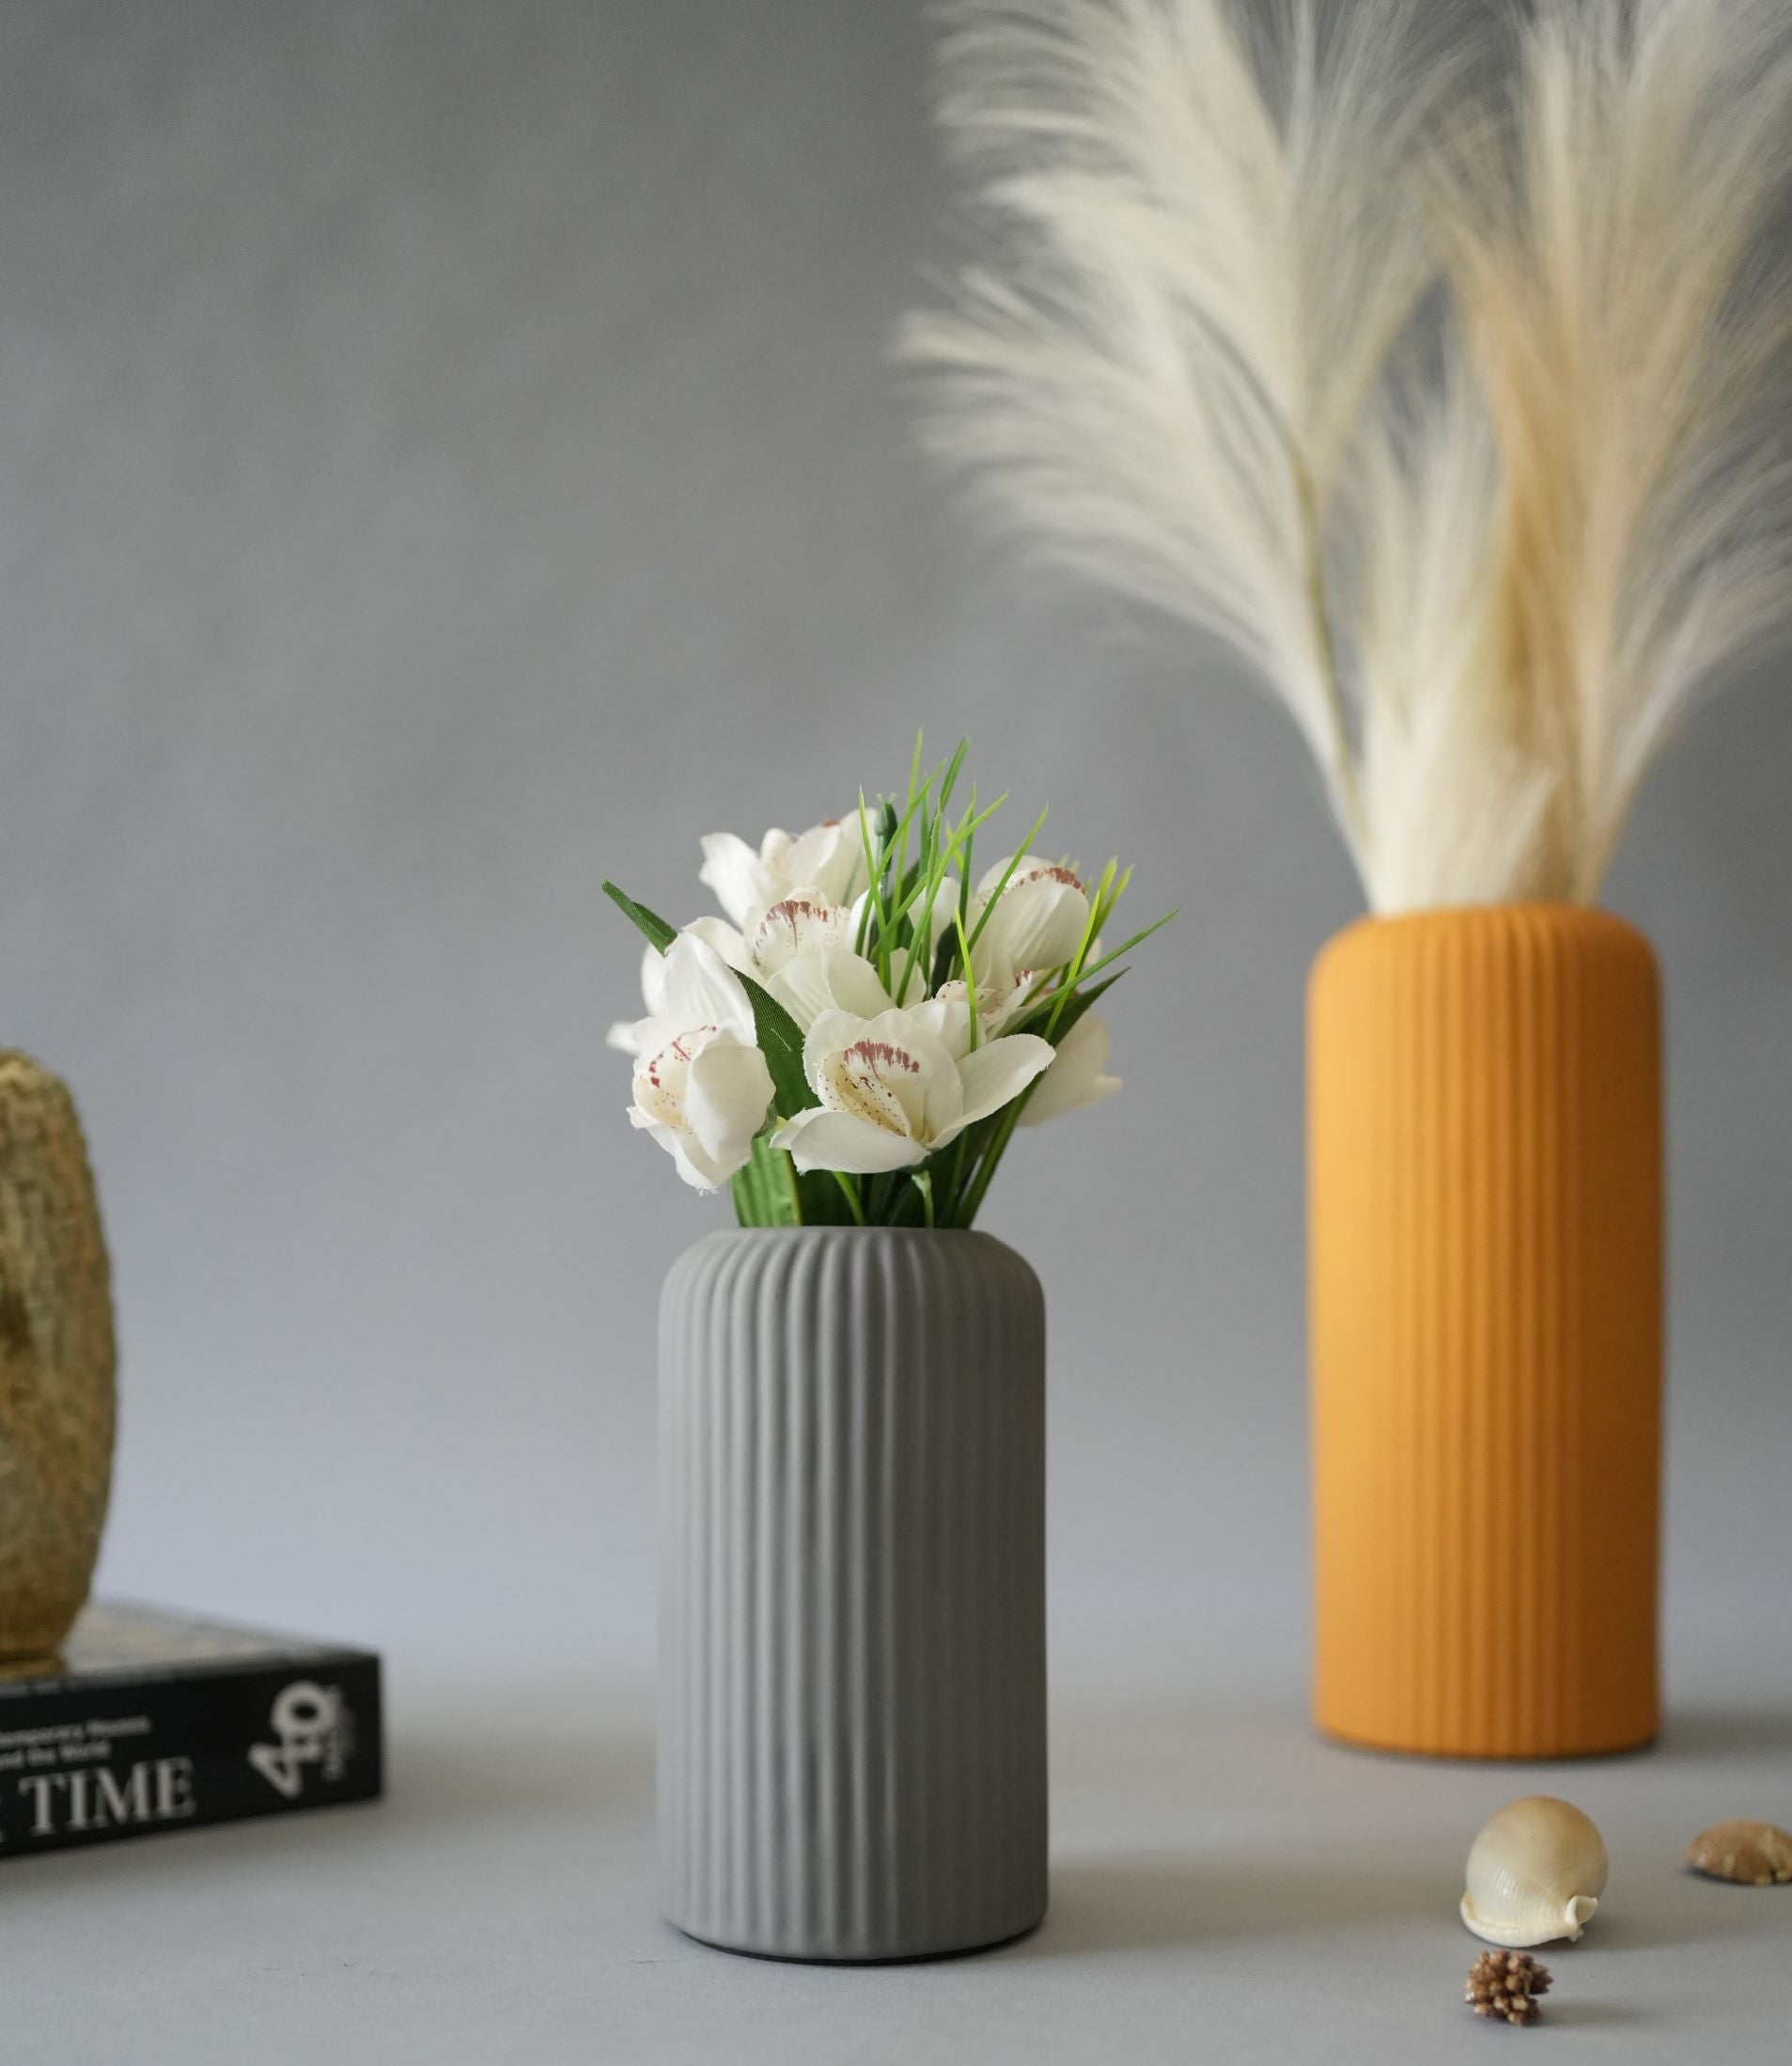 Marmor Grey ceramic vase